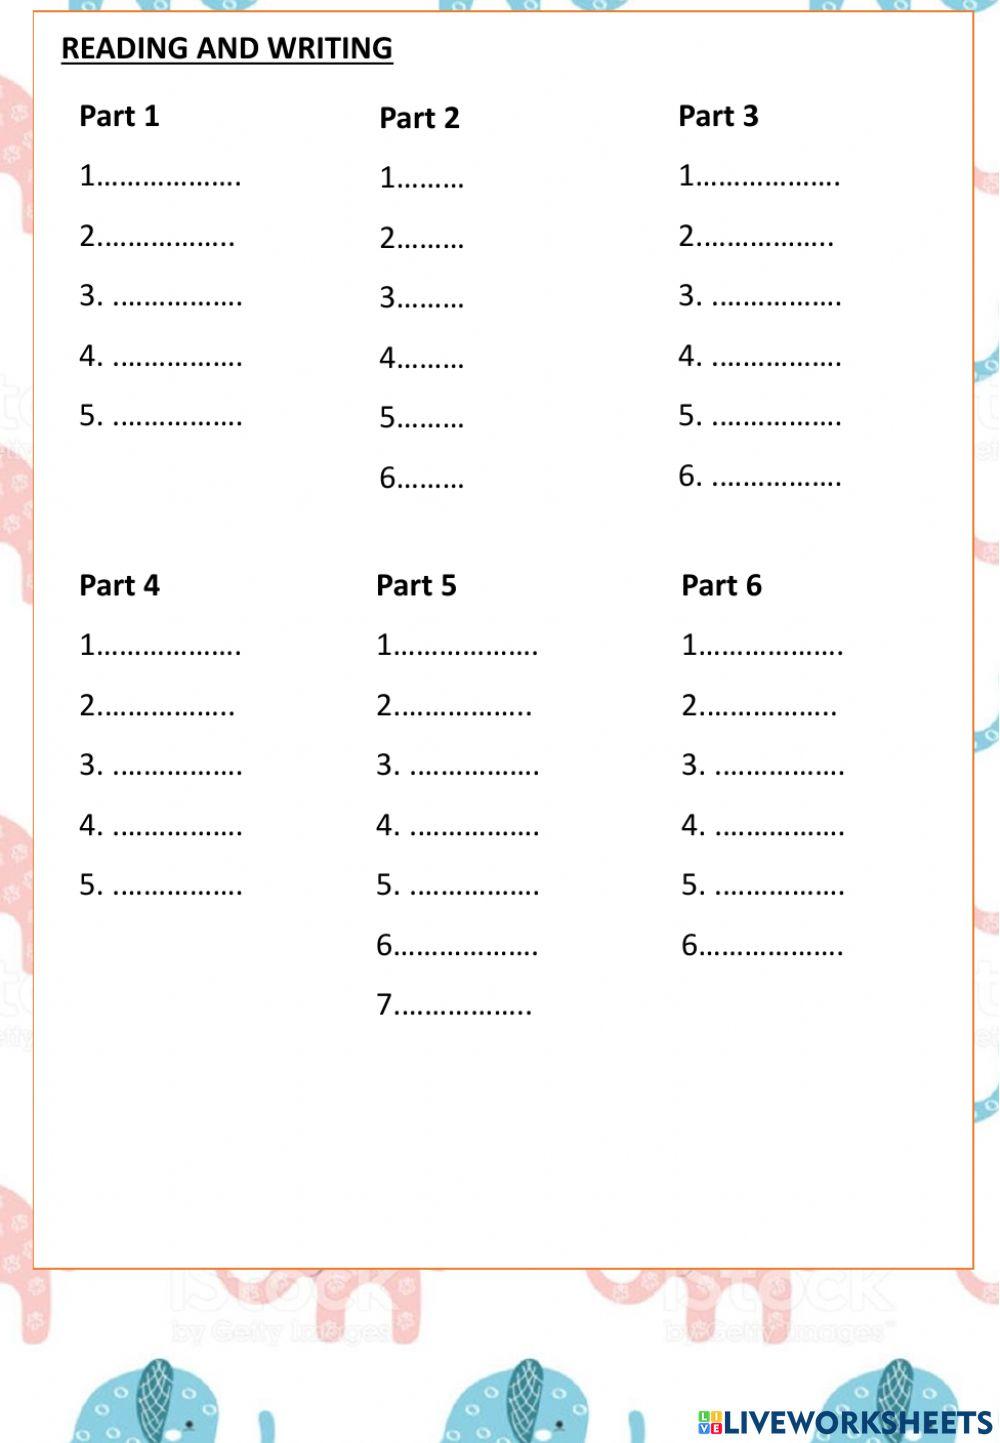 Movers Mini Test 1( trang 5,7,10,11,13,14,16,18,20,21,24,25,27,30,31,32,35,36)